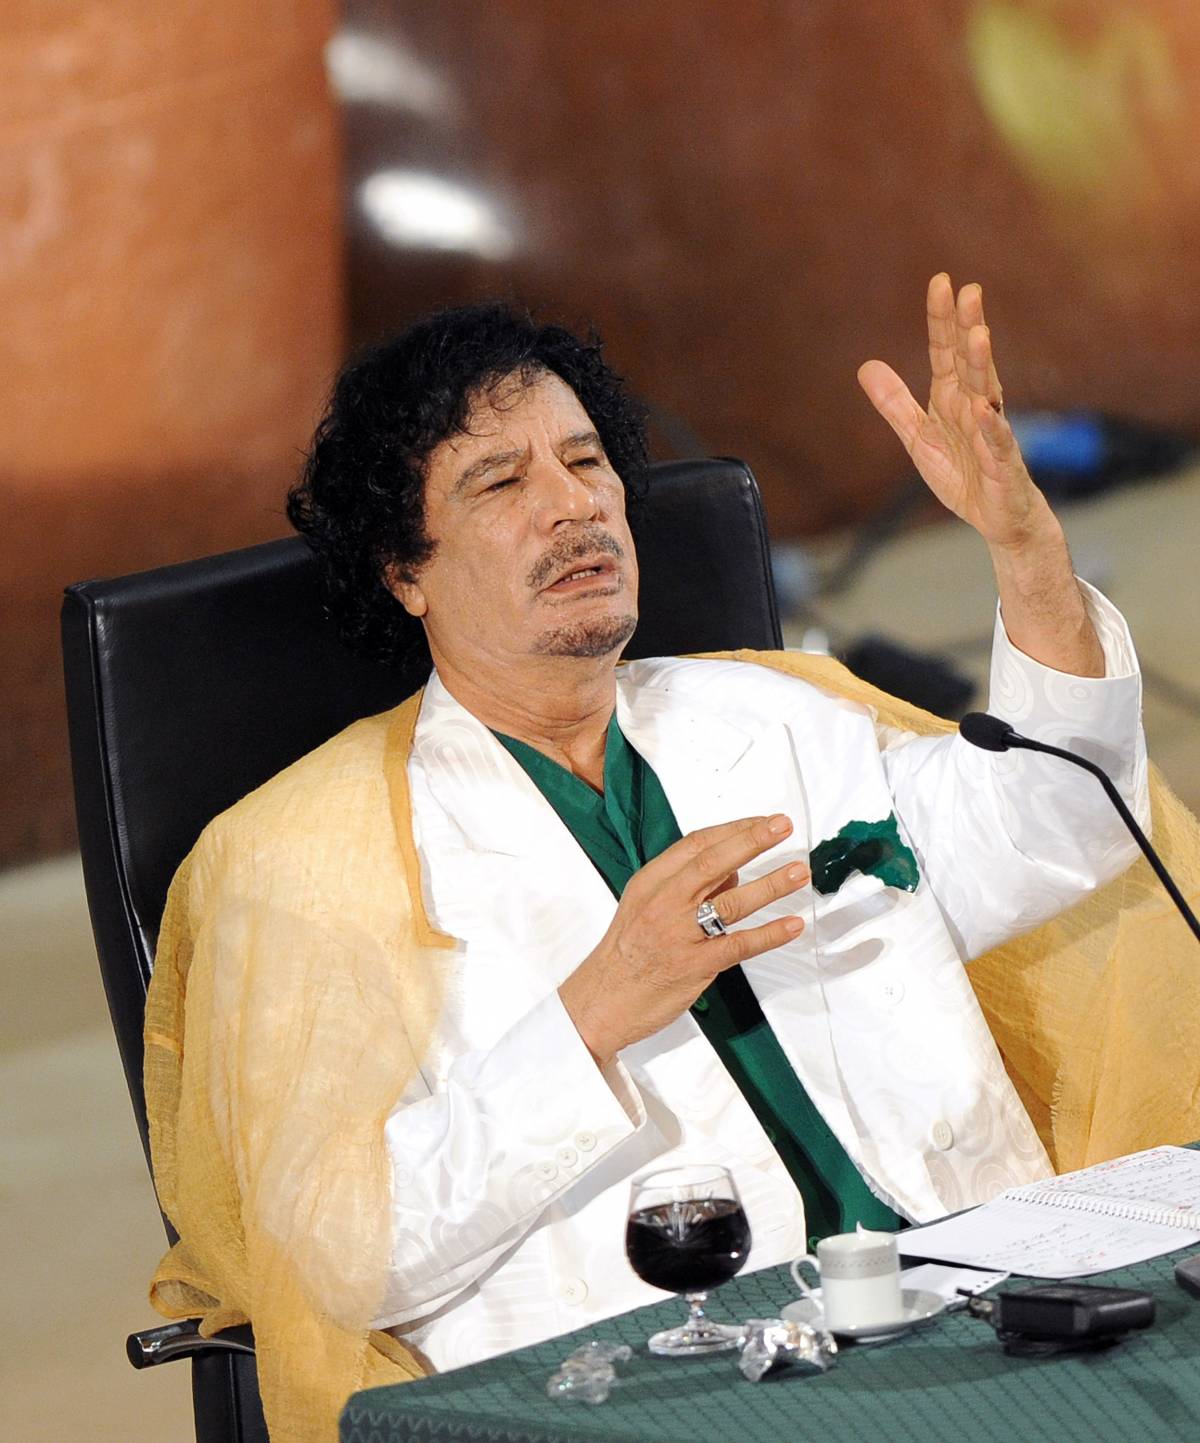 Gheddafi: "Usa come Osama". Frattini: "No" 
Poi va alla Sapienza, contestato dagli studenti